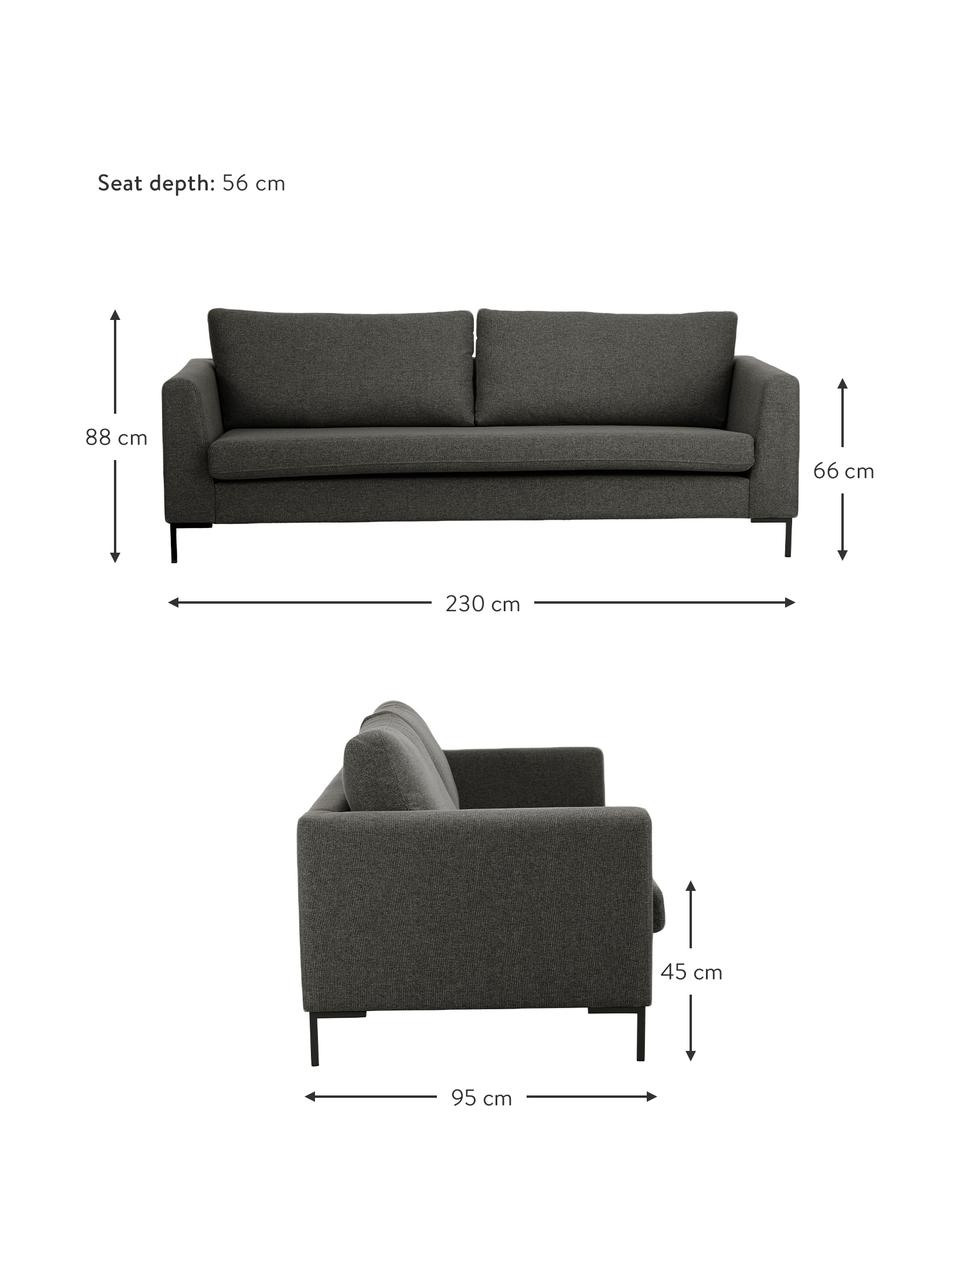 Sofa Luna (3-Sitzer) in Anthrazit mit Metall-Füßen, Bezug: 100% Polyester Der hochwe, Gestell: Massives Buchenholz, Füße: Metall, galvanisiert, Webstoff Anthrazit, B 230 x T 95 cm